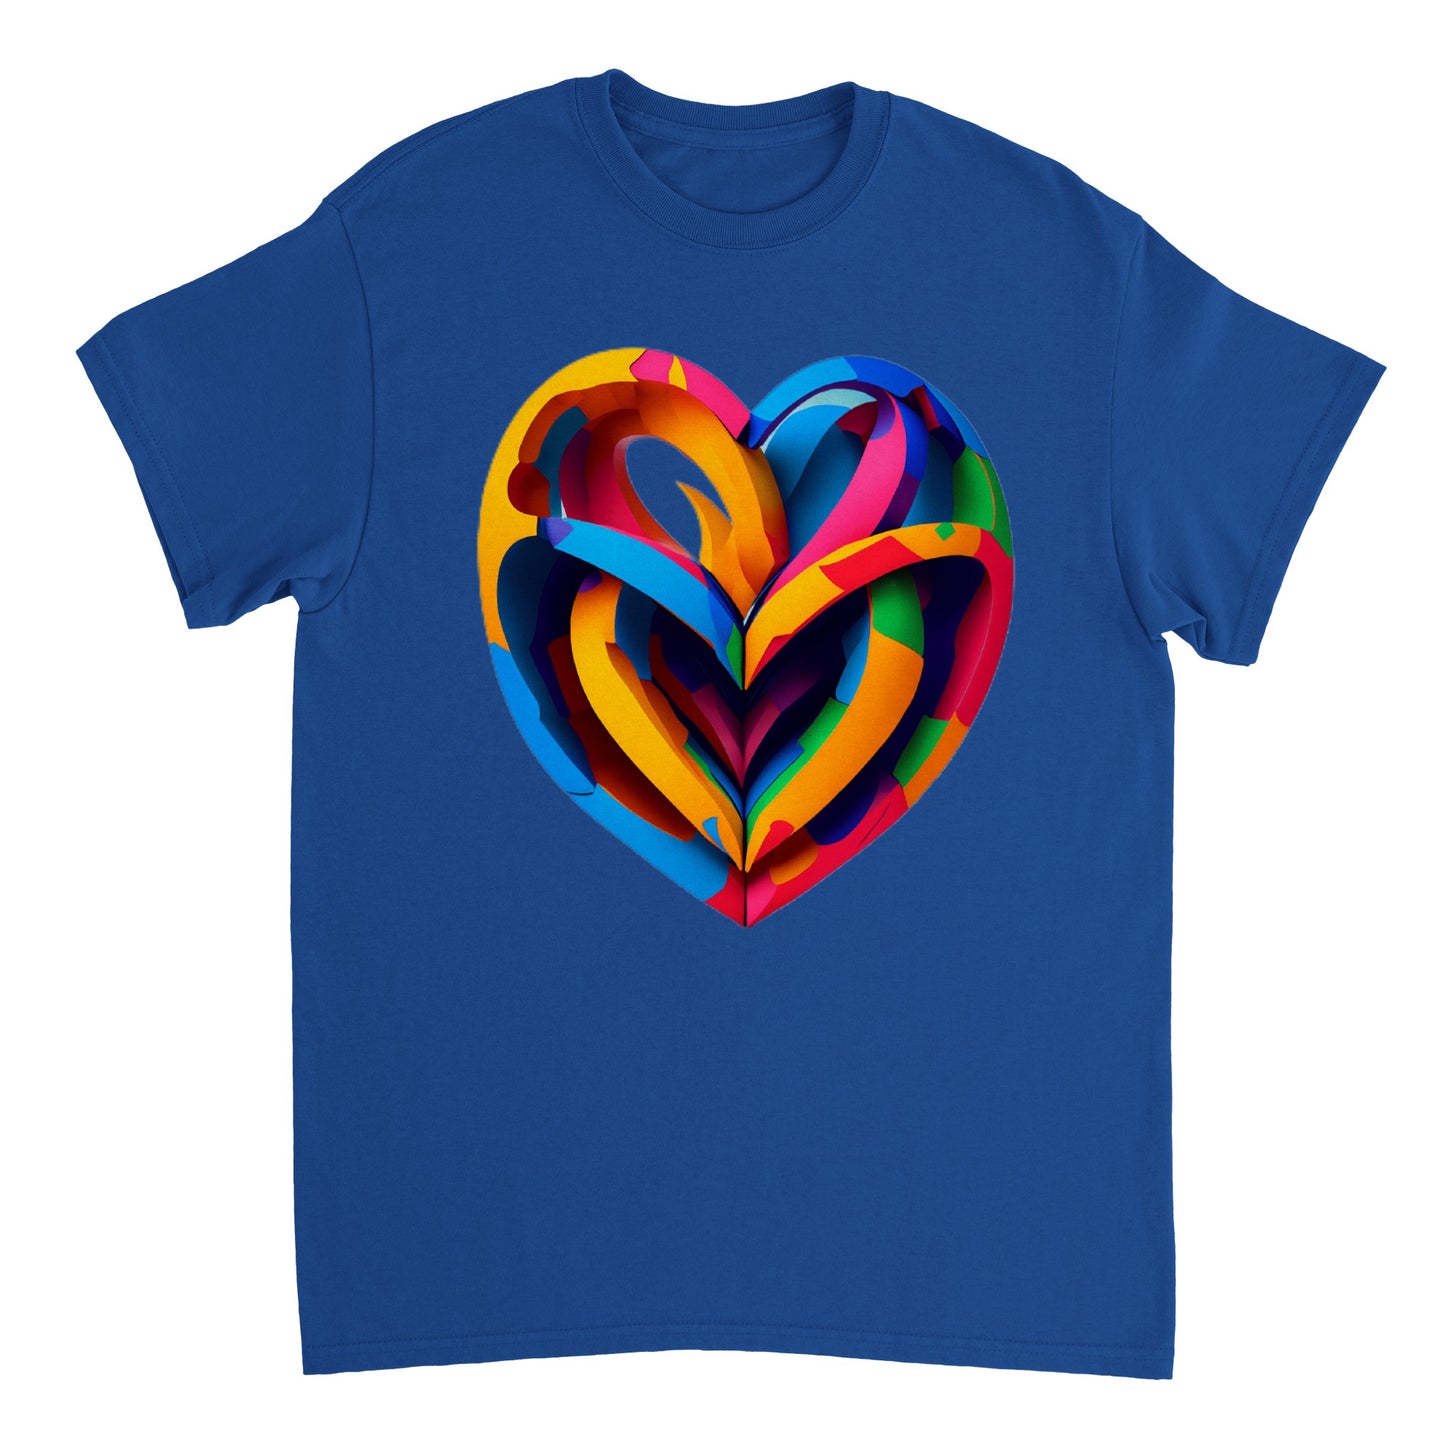 Love Heart - Heavyweight Unisex Crewneck T-shirt 24